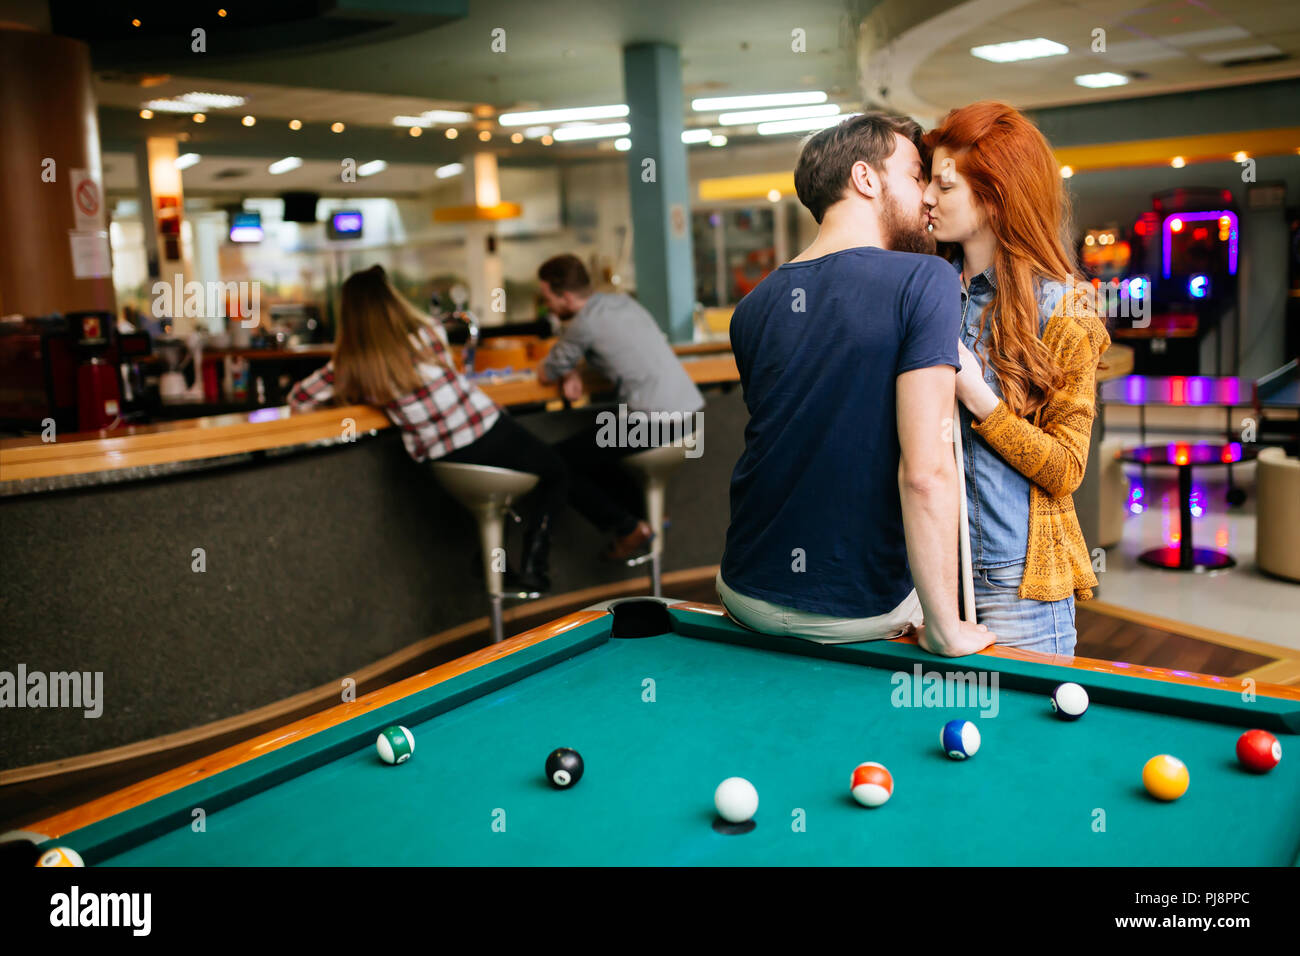 Schönes Paar Küssen in Billard Bar Stockfotografie - Alamy